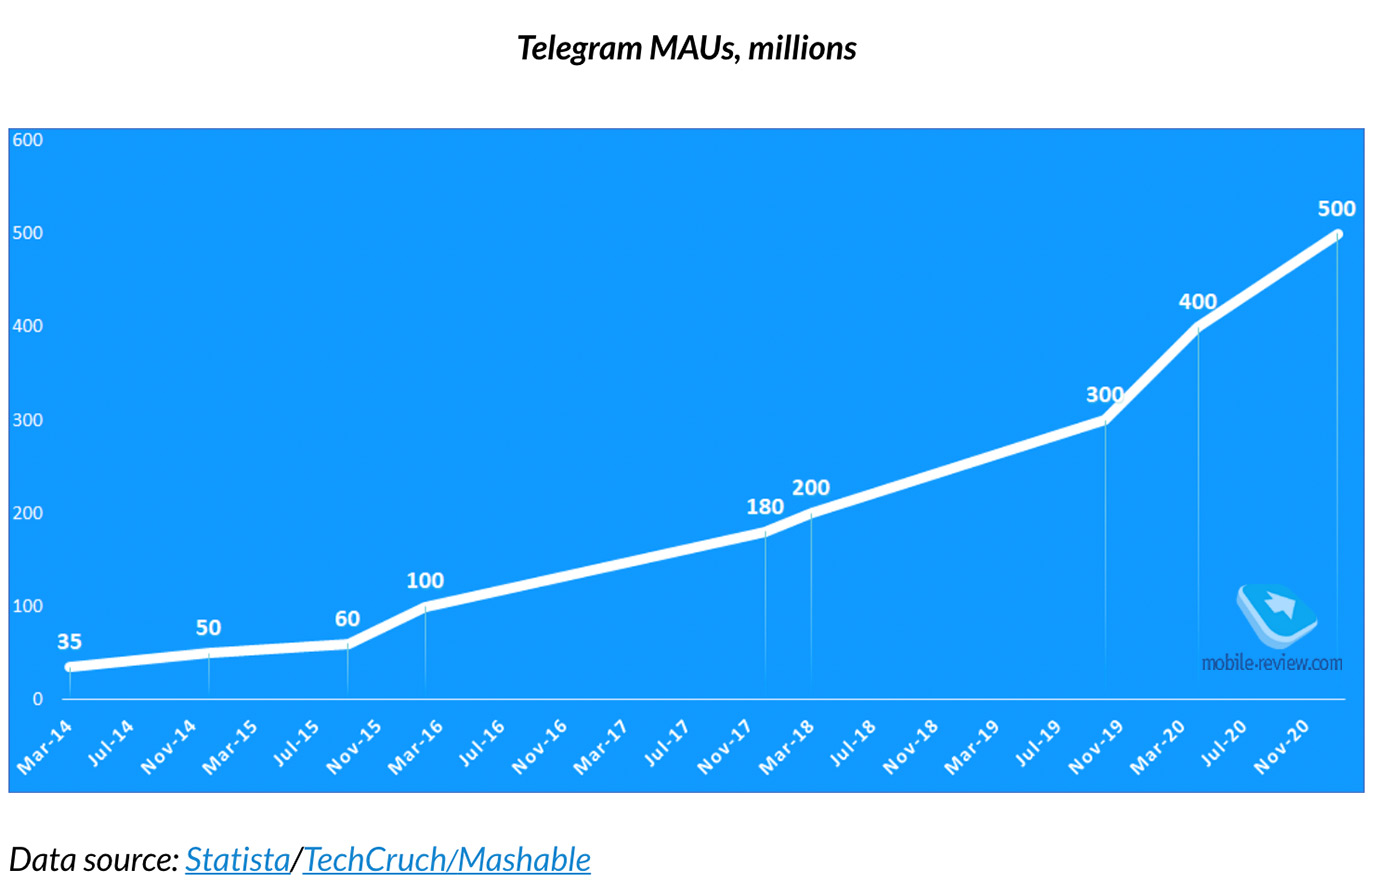 Стоимость содержания Telegram как сервиса. Экономика мессенджера